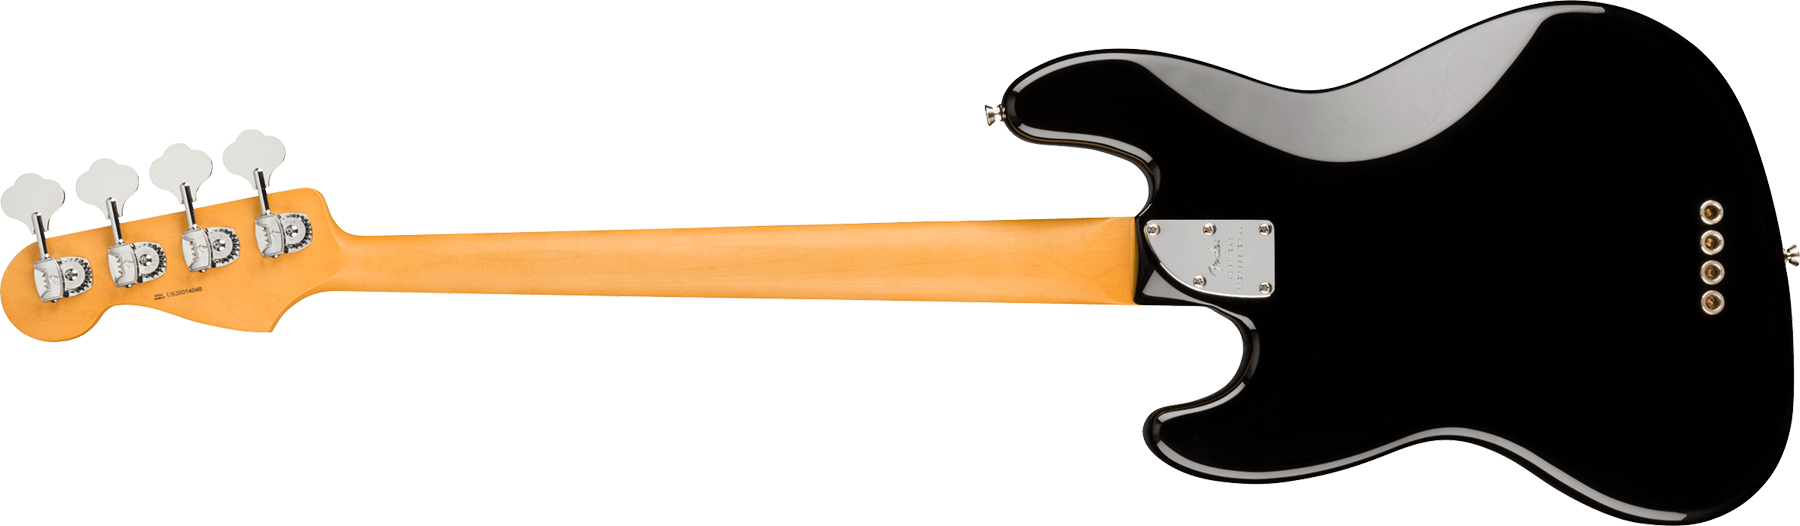 Fender Jazz Bass American Professional Ii Usa Rw - Black - Bajo eléctrico de cuerpo sólido - Variation 1